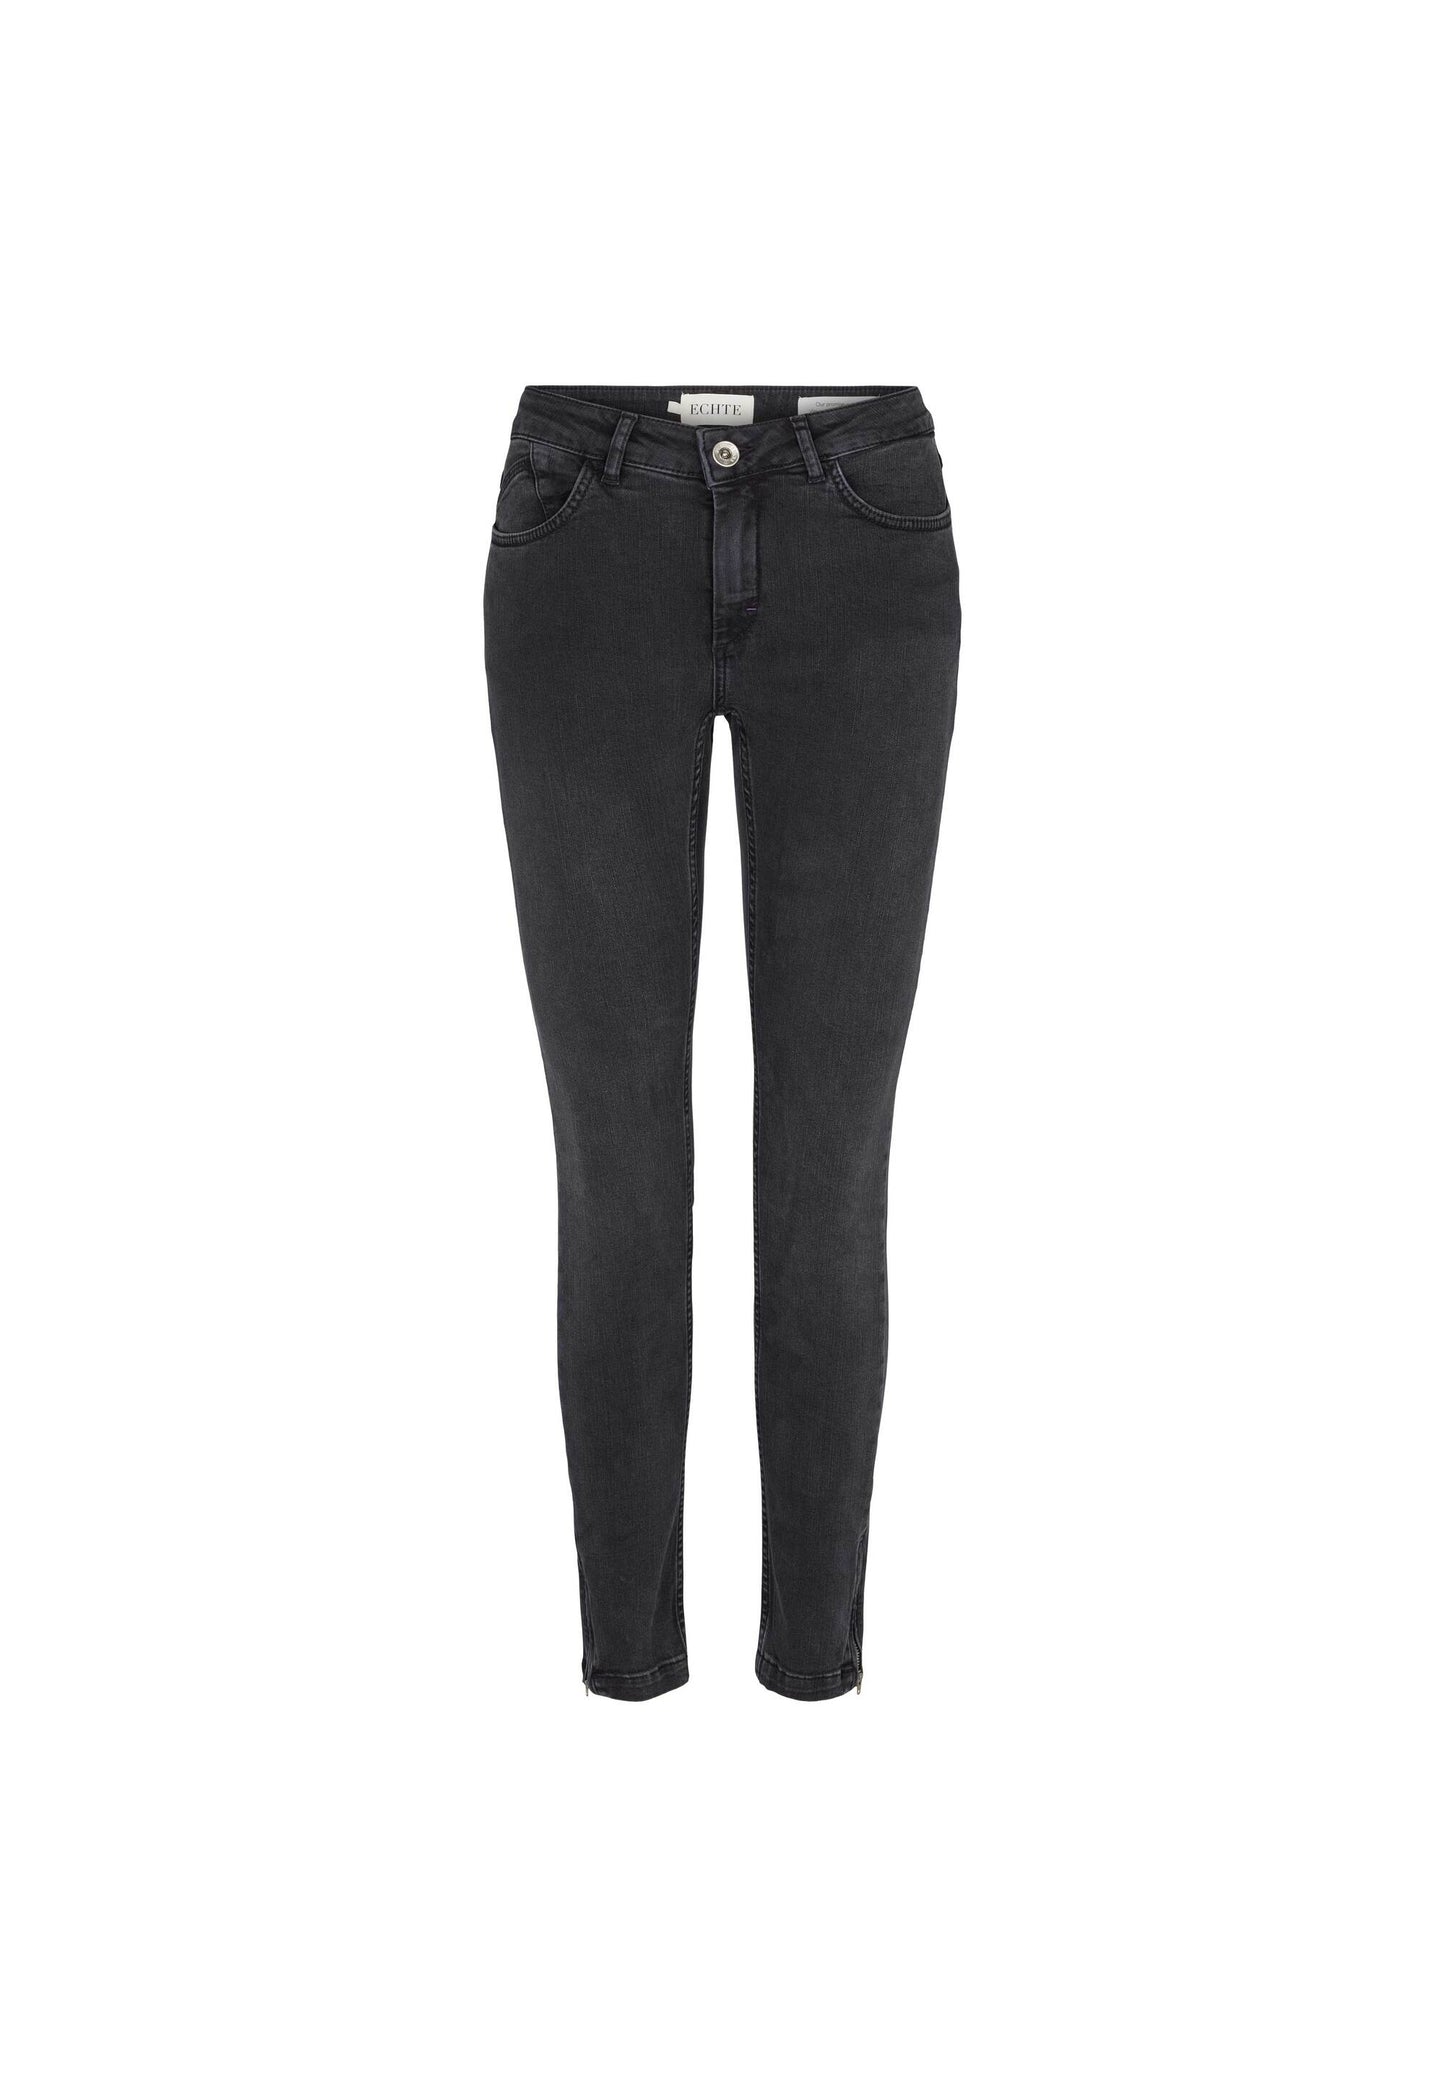 ECHTE Alpha Jeans Trousers 09004 Black Wash